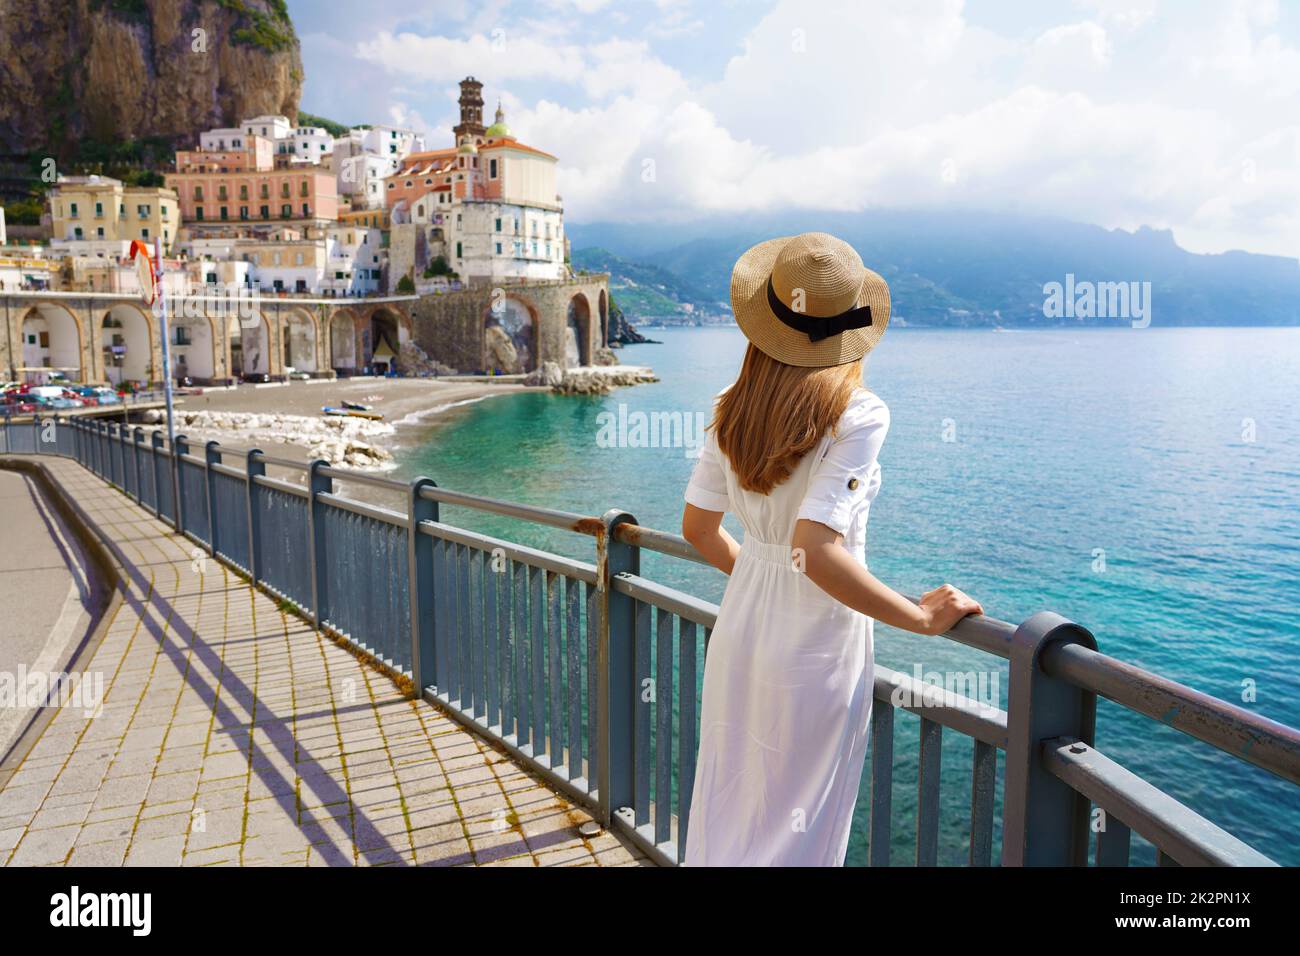 Urlaub an der Amalfiküste. Rückansicht der schönen Mode Mädchen genießen Blick auf das Dorf Atrani an der Amalfiküste. Urlaub Italy im Sommer. Stockfoto